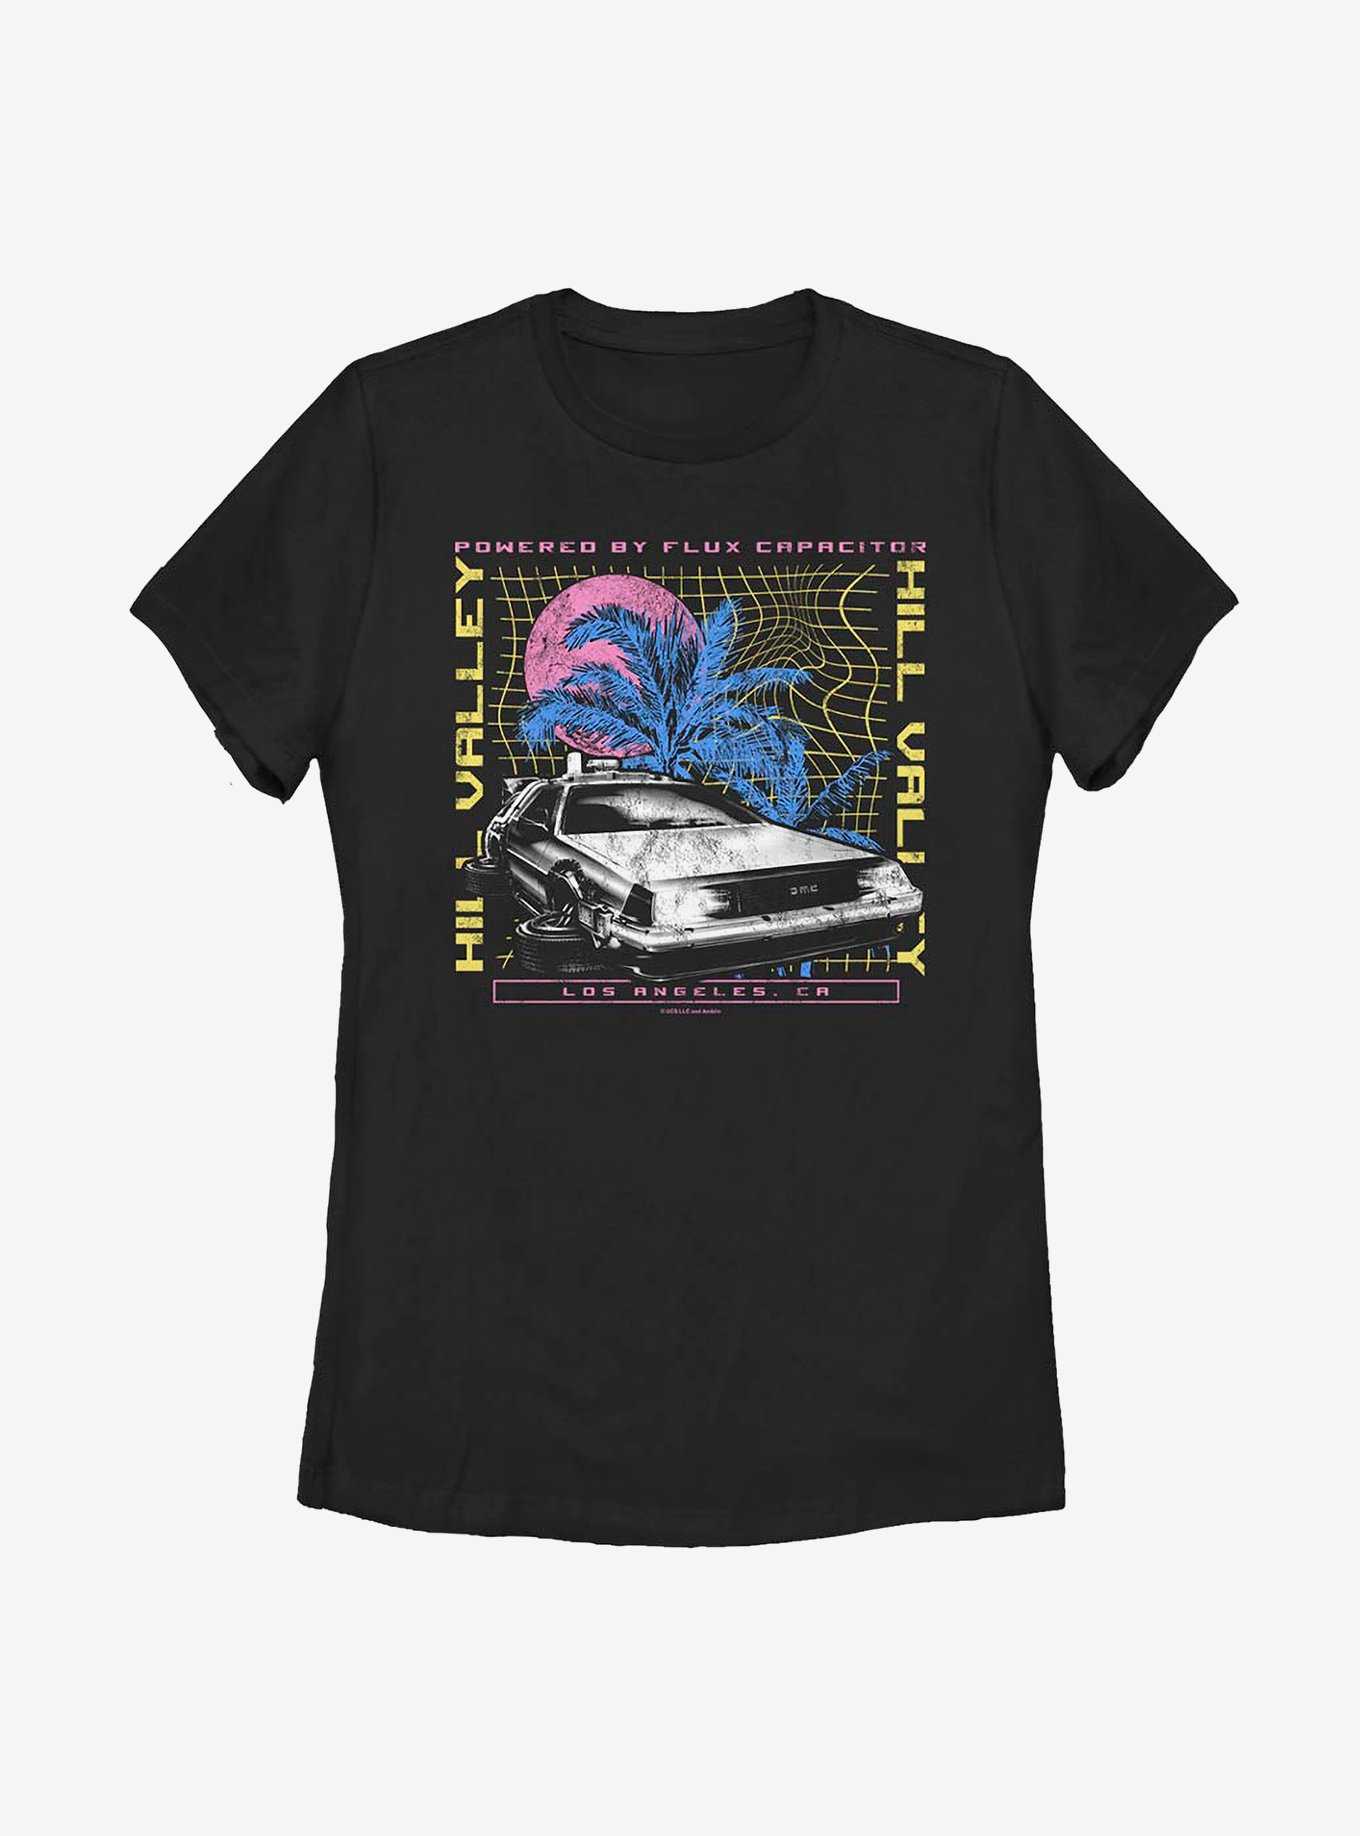 Back To The Future DeLorean Destination Womens T-Shirt, , hi-res